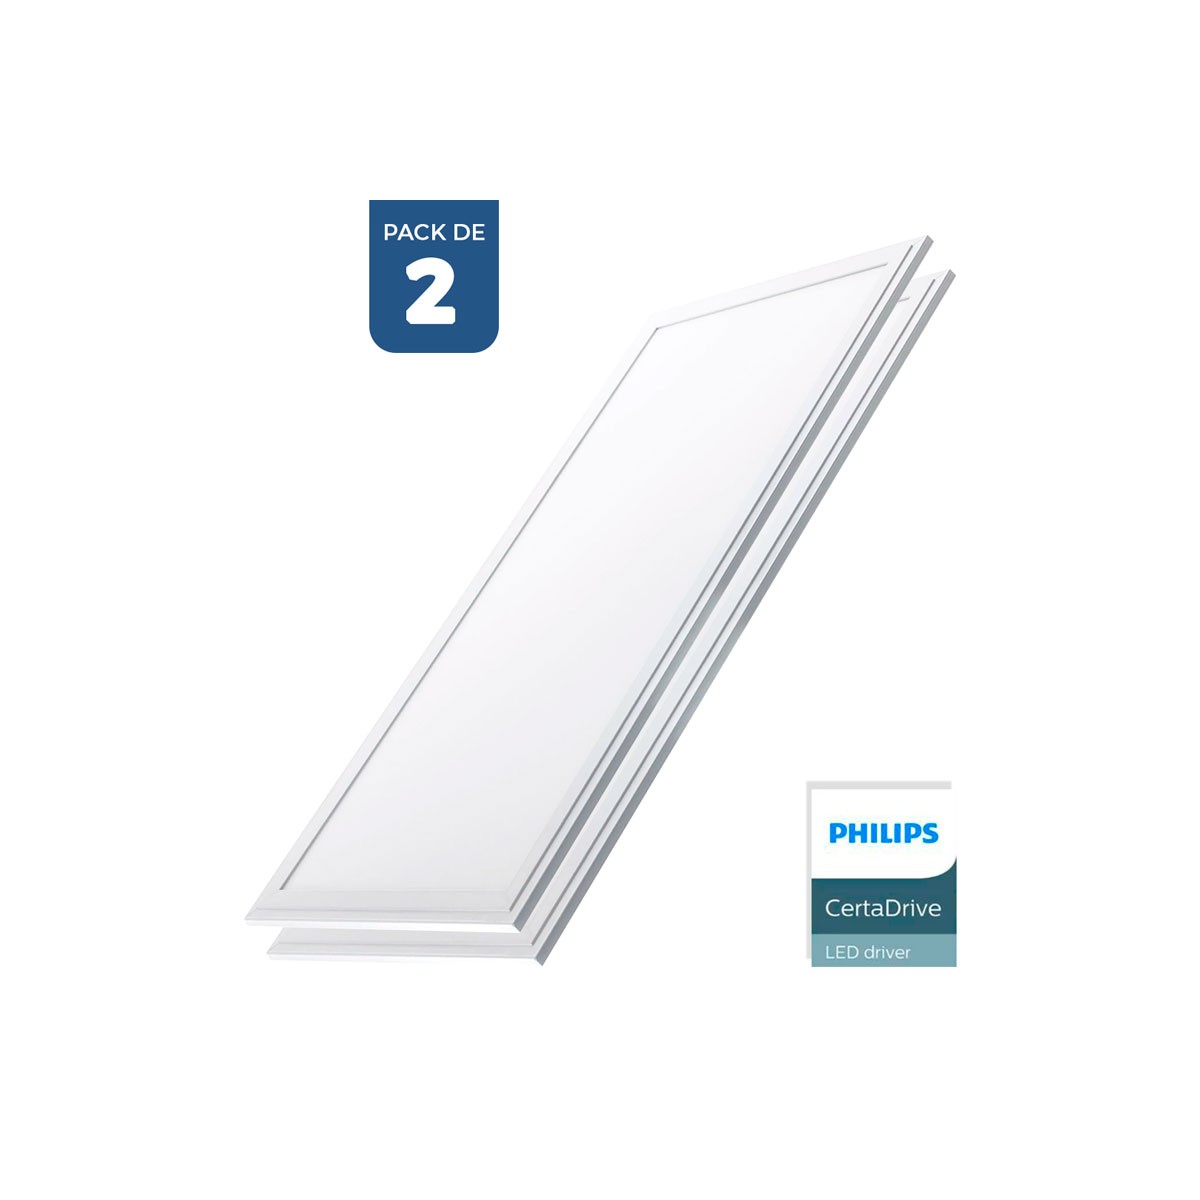 2er Pack x Slim LED Panels 120x30cm - Philips Treiber - 44W - UGR19 - Arbeitsplatz, Sehkomfort, blendfrei